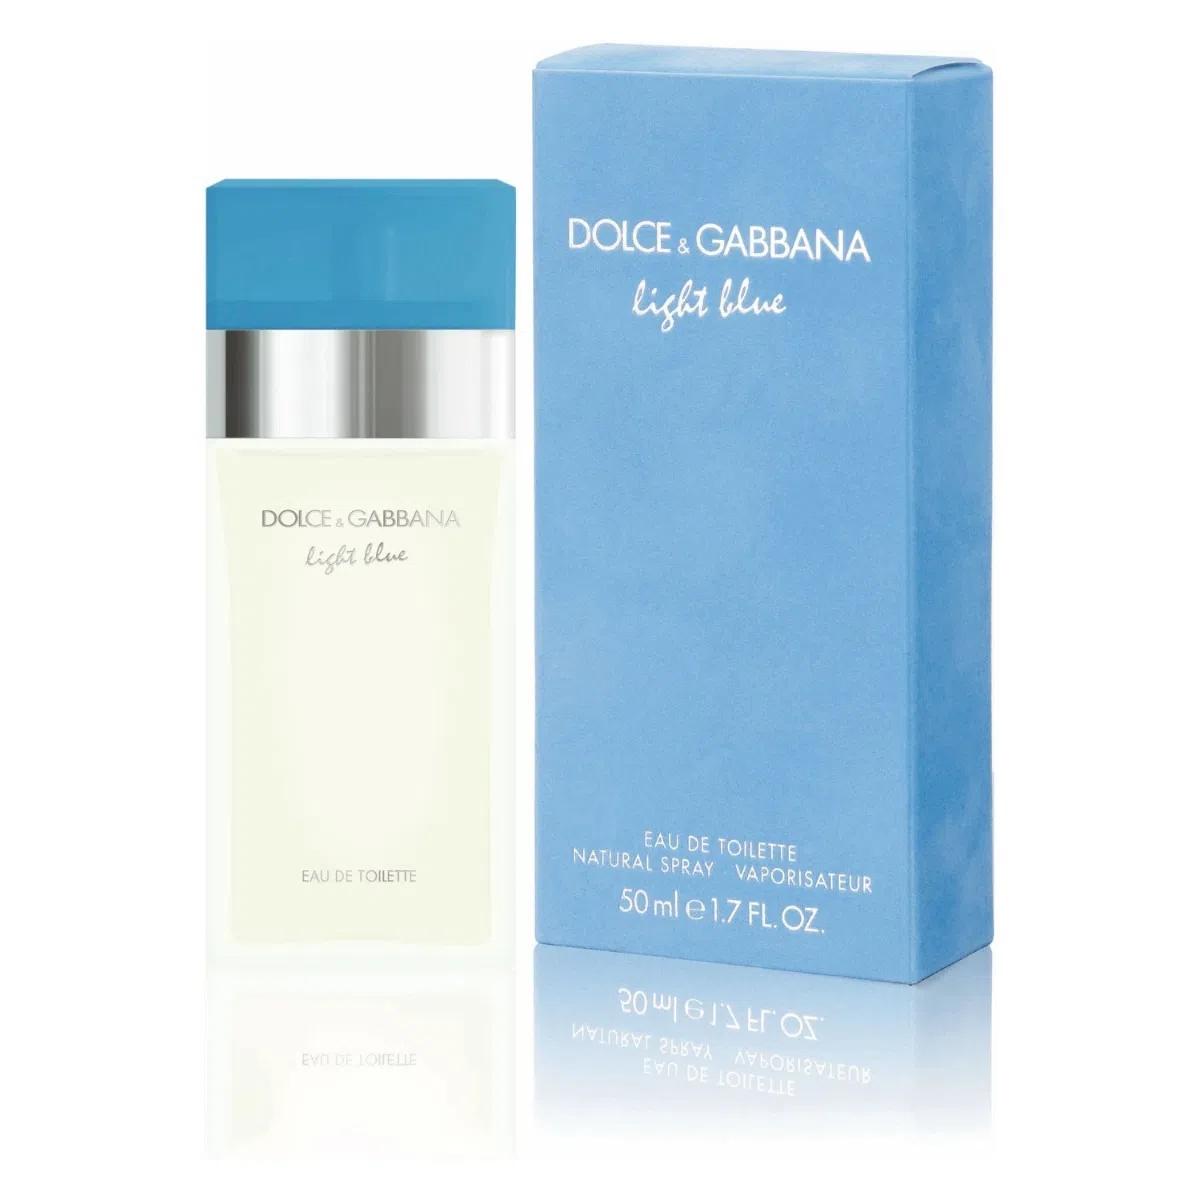 vidro de perfume feminino transparente light Blue